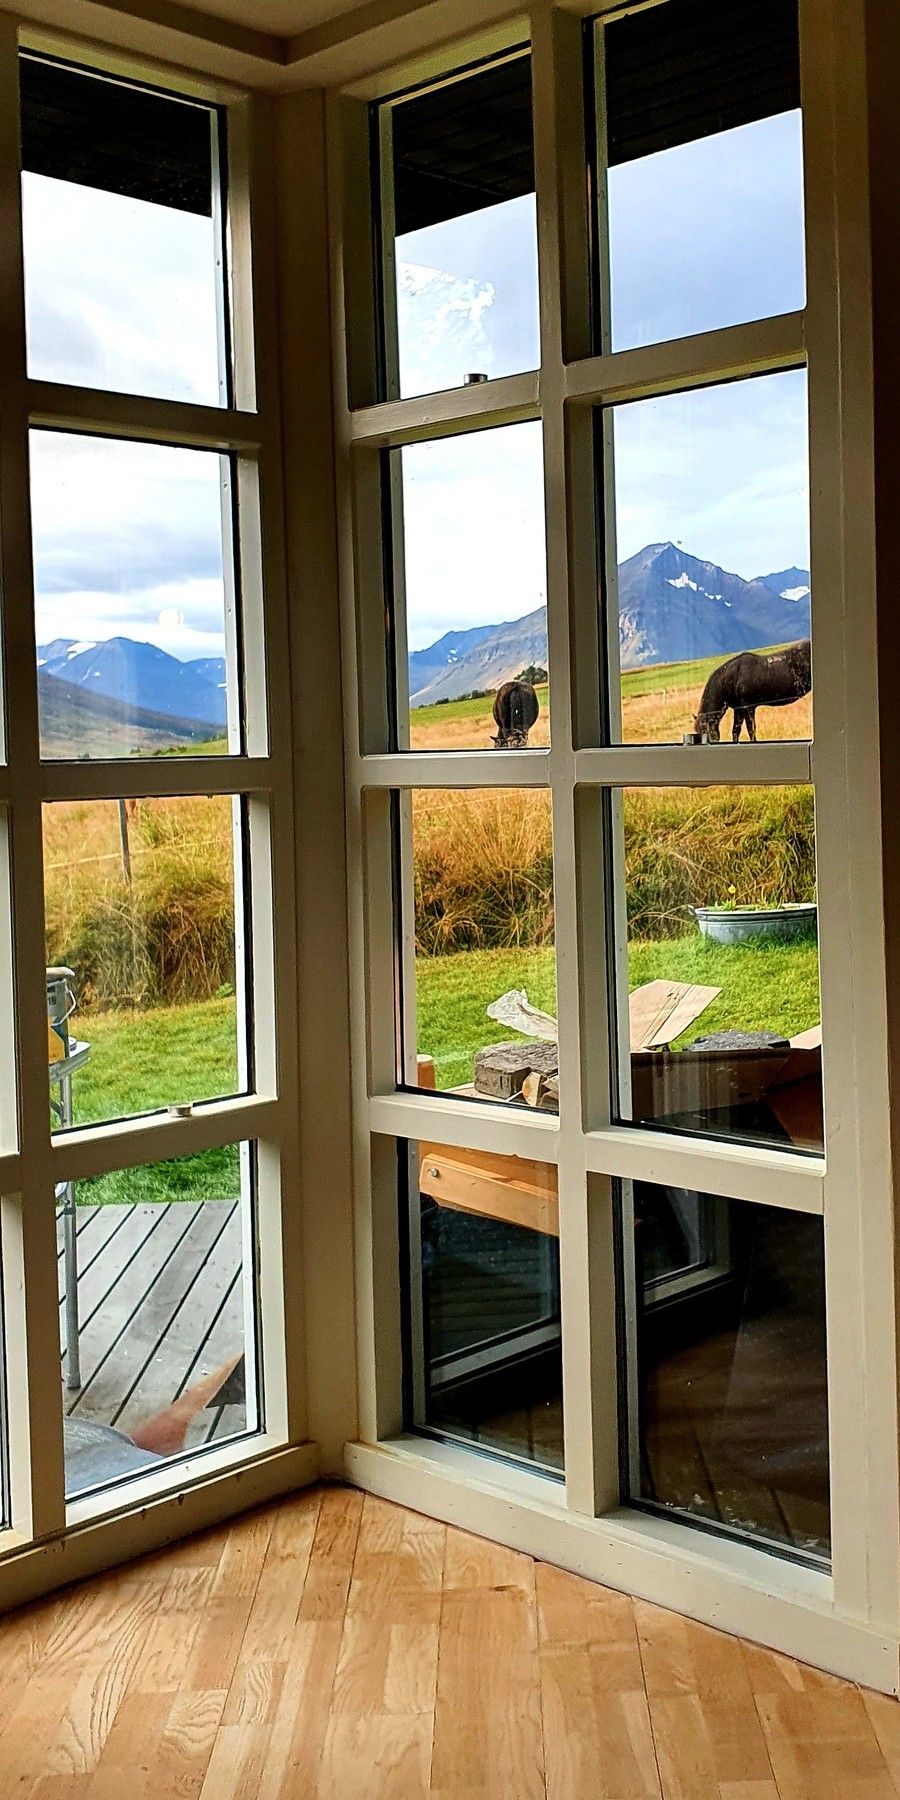 Islandpferde zu Besuch am Ferienhaus